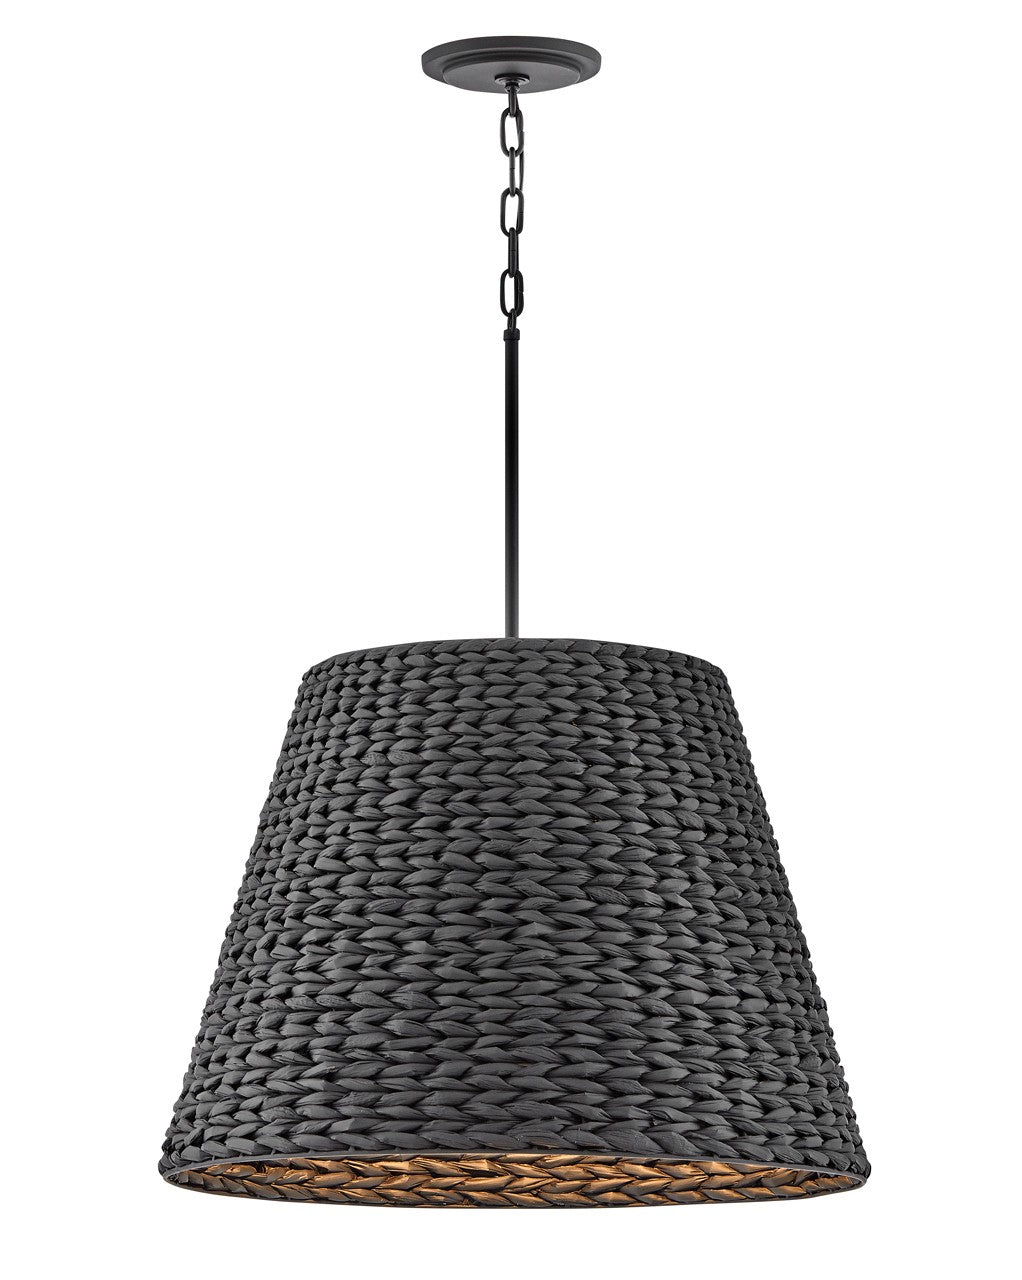 Seabrook LED Chandelier in Black by Hinkley Lighting